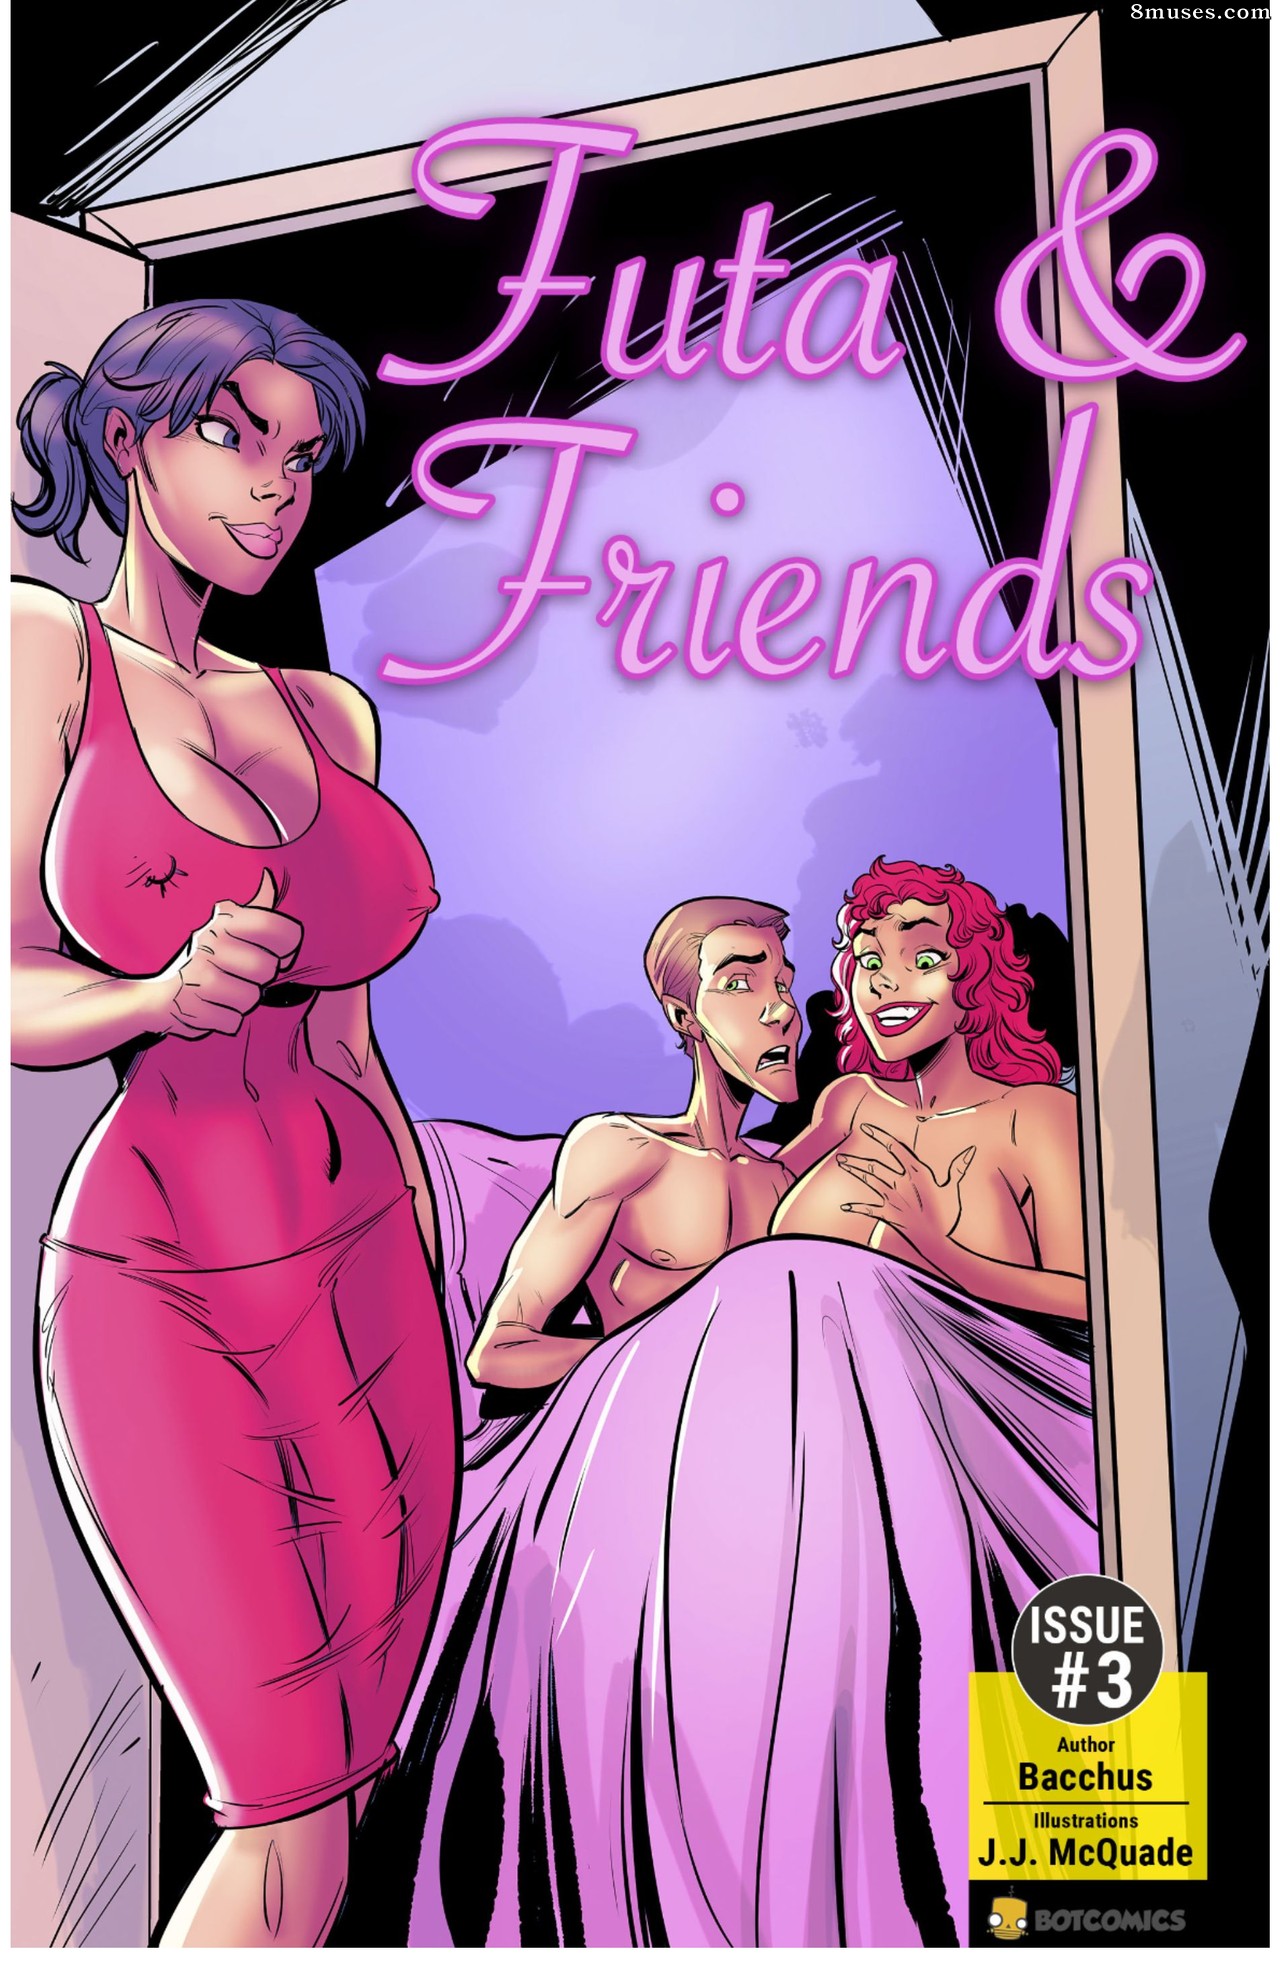 Futa Porn Comics - Futa & Friends Issue 3 - 8muses Comics - Sex Comics and Porn Cartoons